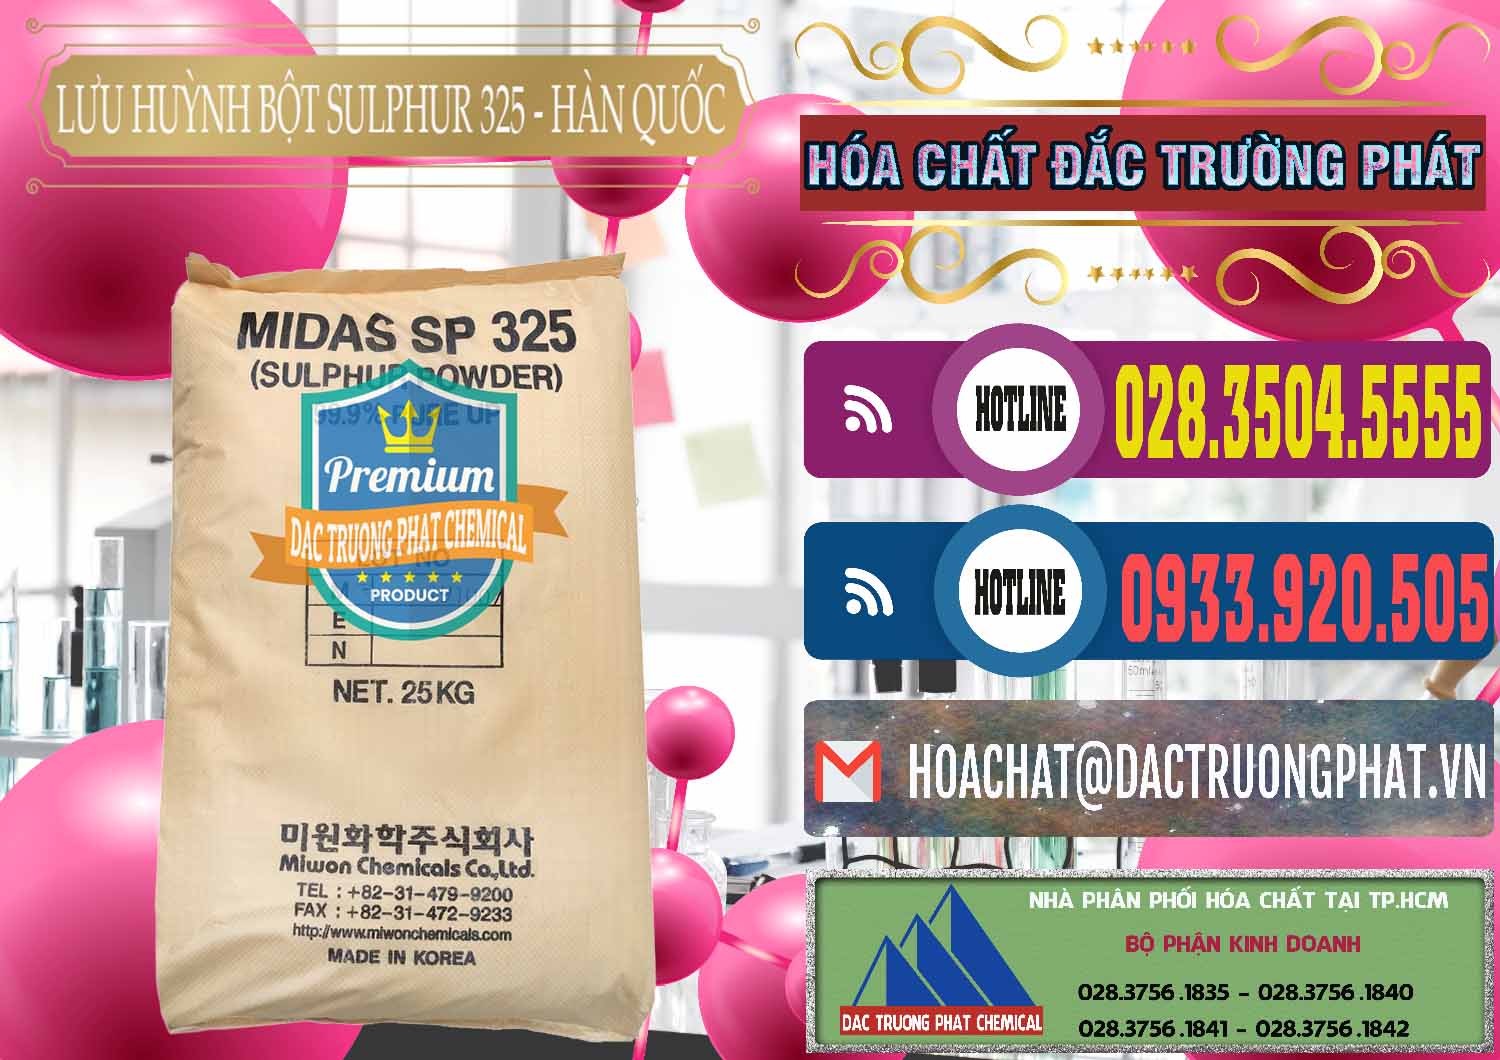 Công ty cung ứng ( bán ) Lưu huỳnh Bột - Sulfur Powder Midas SP 325 Hàn Quốc Korea - 0198 - Cty cung cấp ( phân phối ) hóa chất tại TP.HCM - muabanhoachat.com.vn